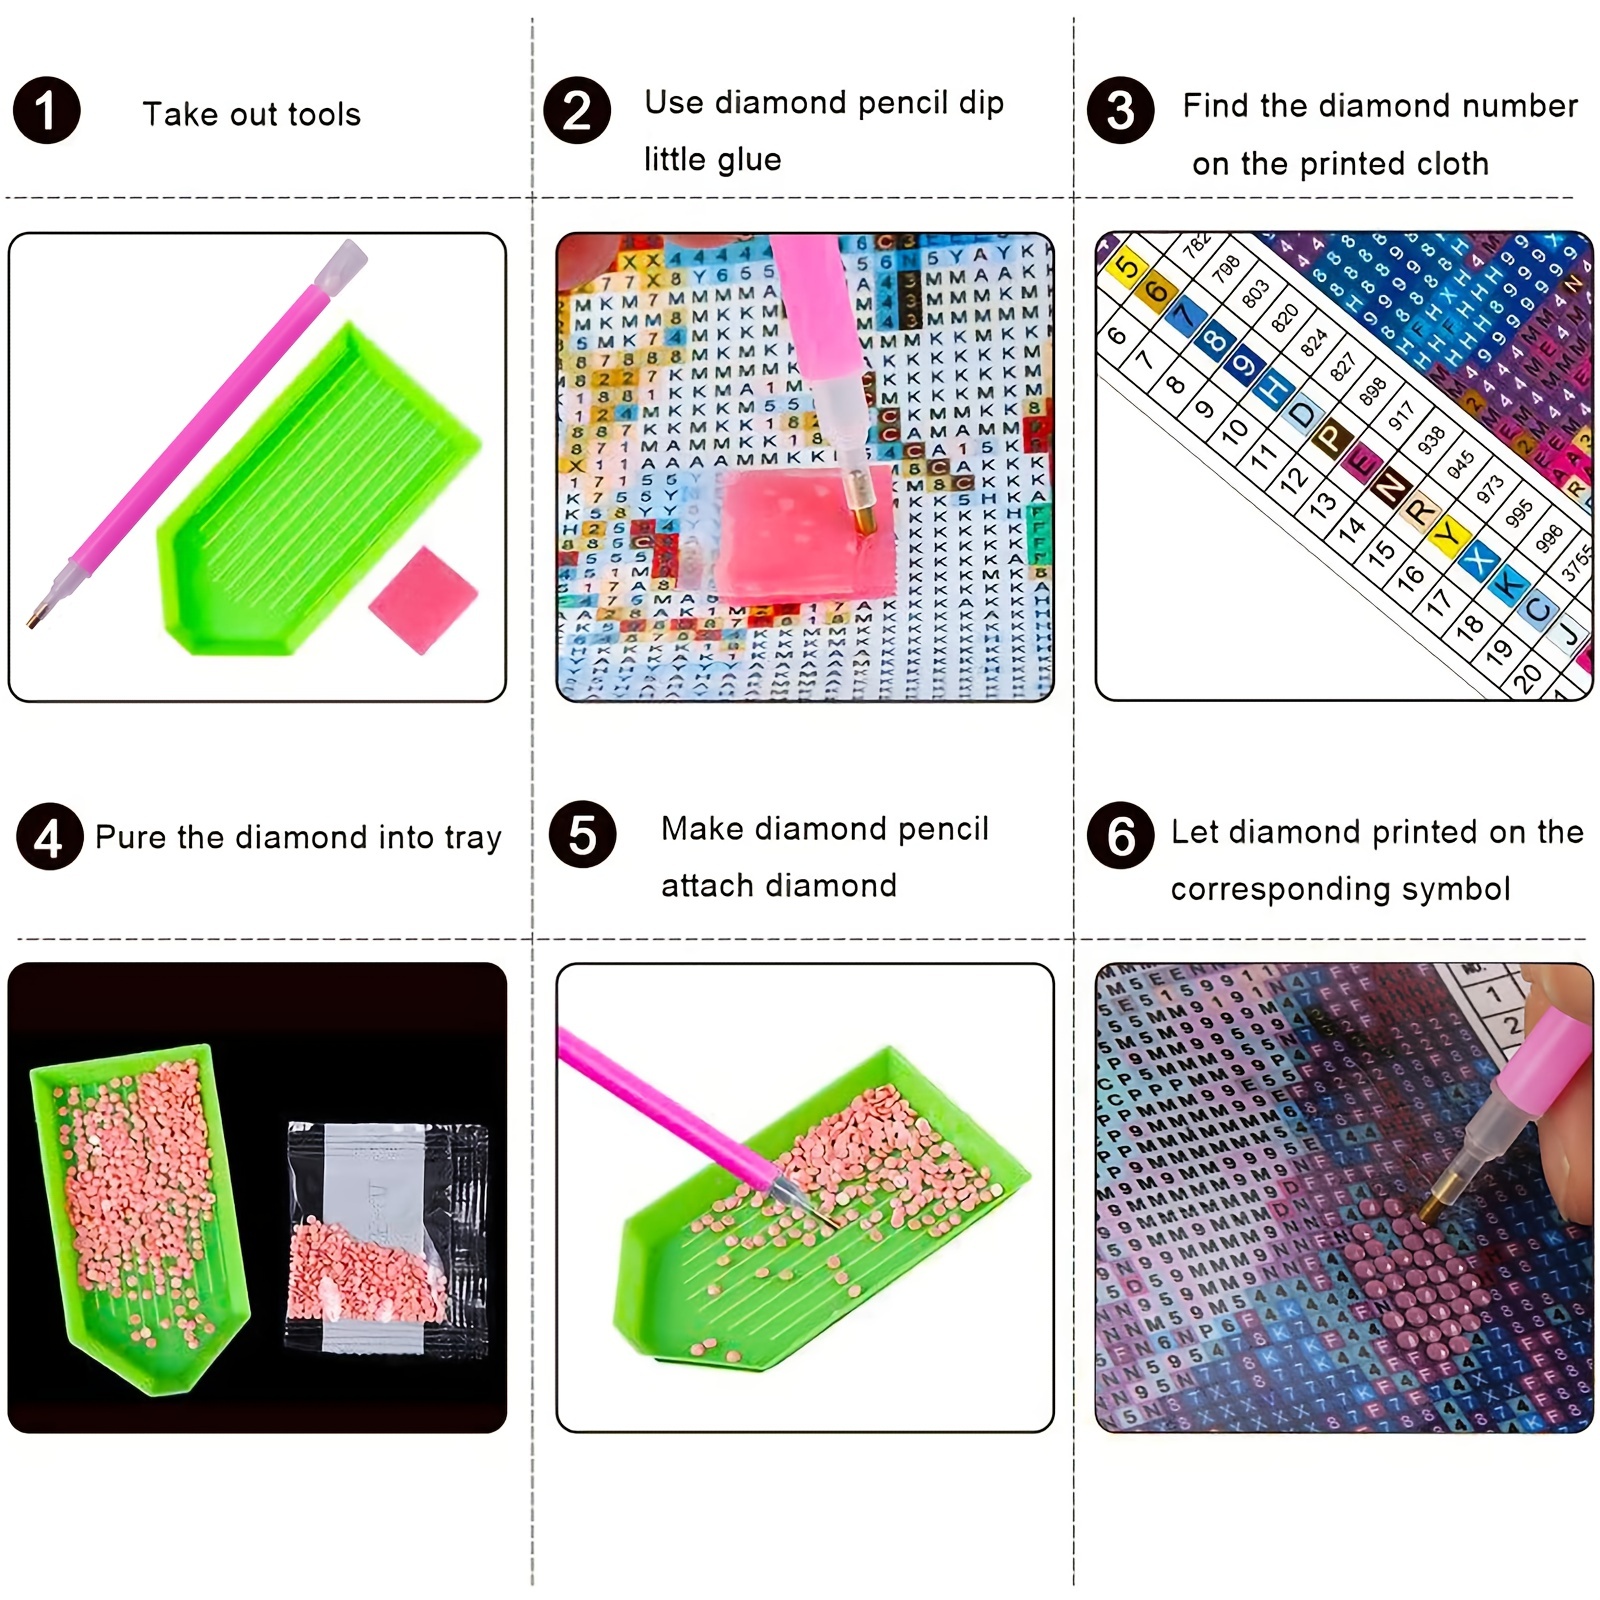 10 Diamond Dotz Kits ideas  painting kits, diamond painting, painting